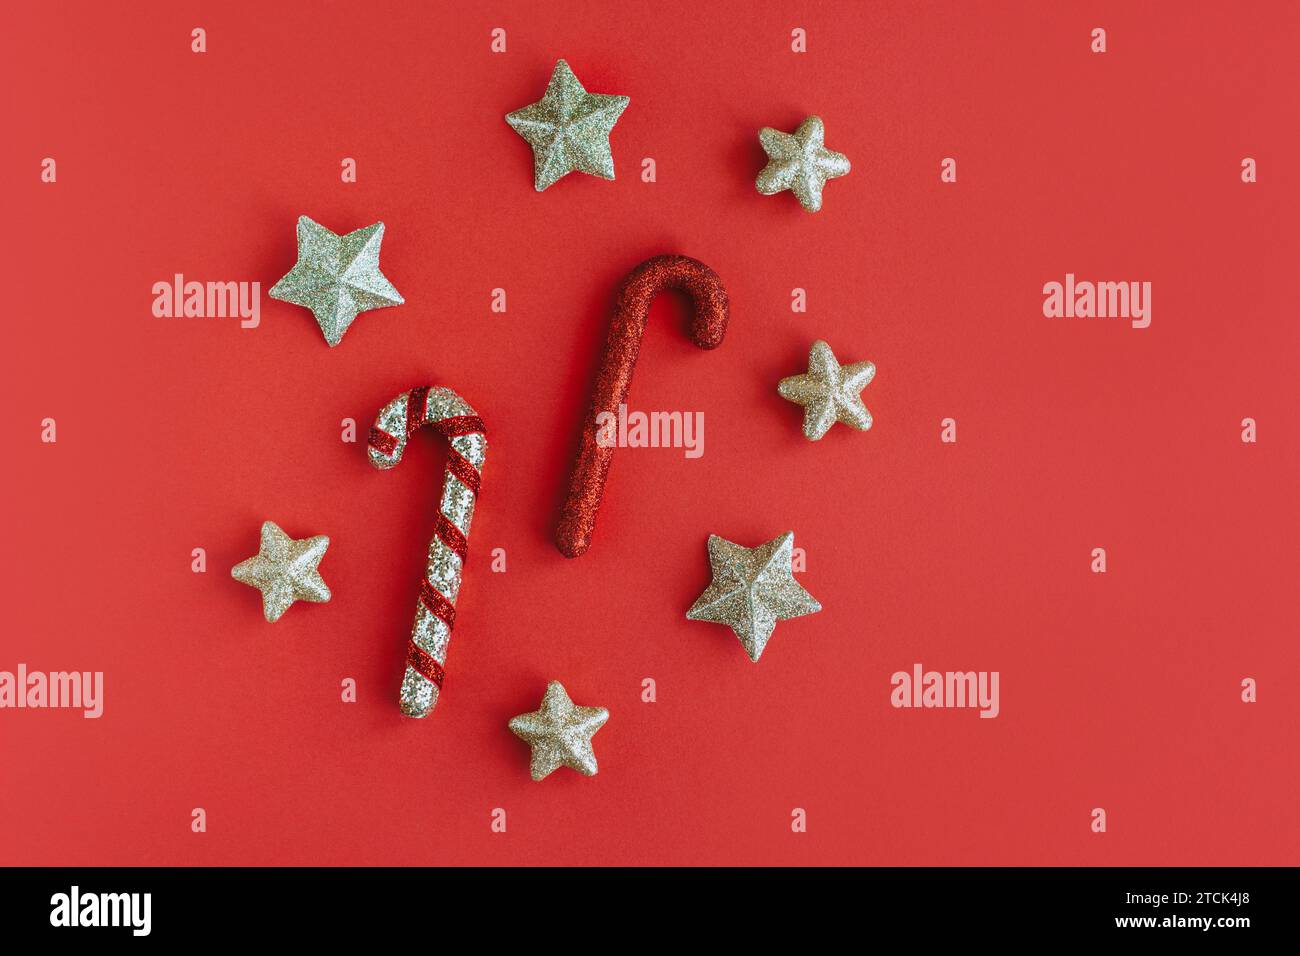 Ornements étincelants de Noël sur un fond rouge. Concept de vacances. Placer pour le texte. Banque D'Images